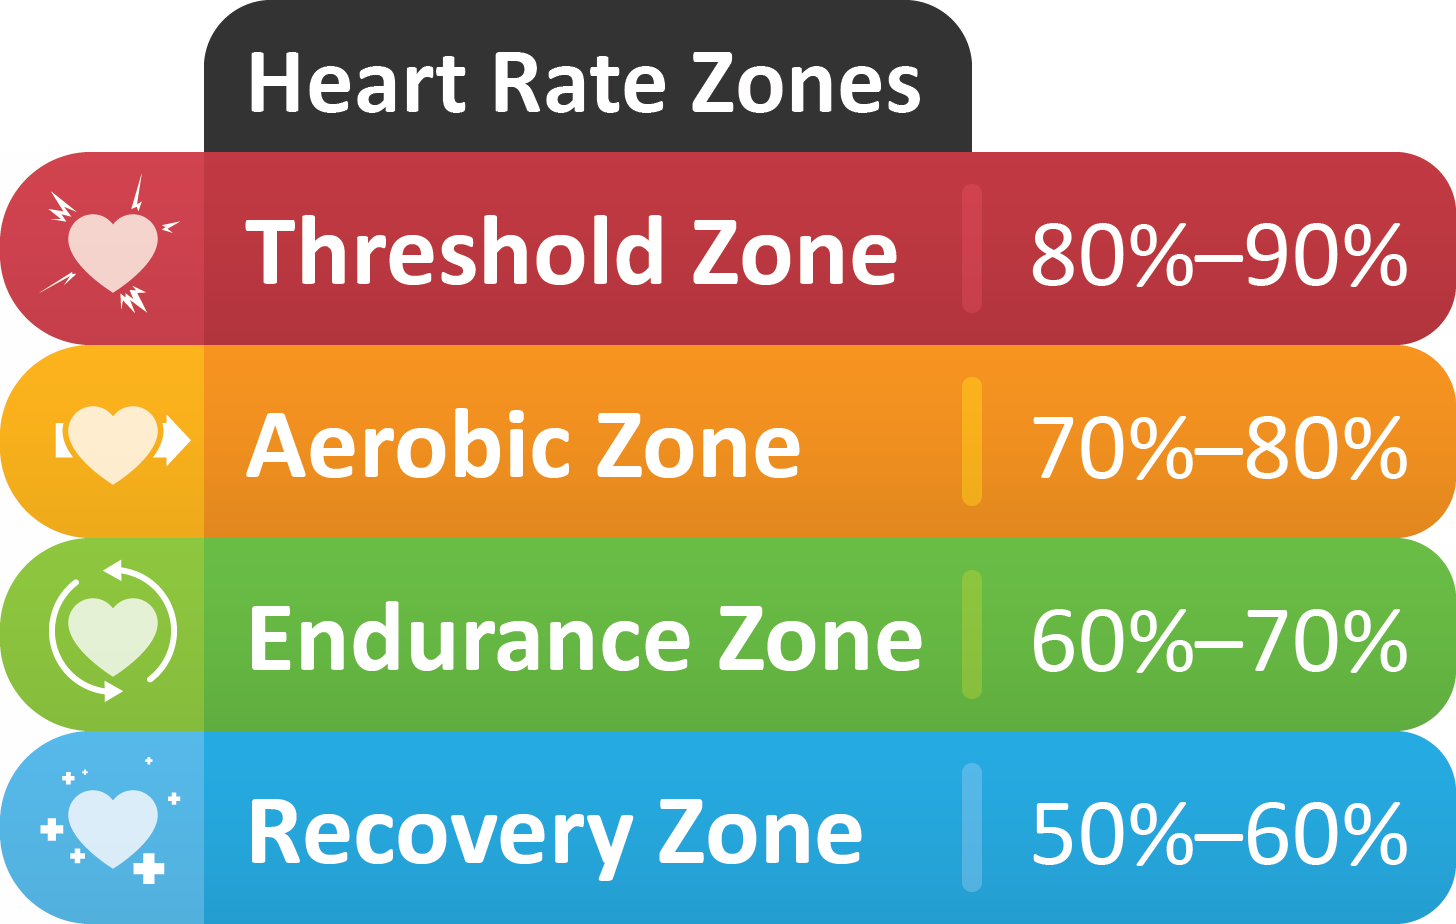 Heart Rate Zones